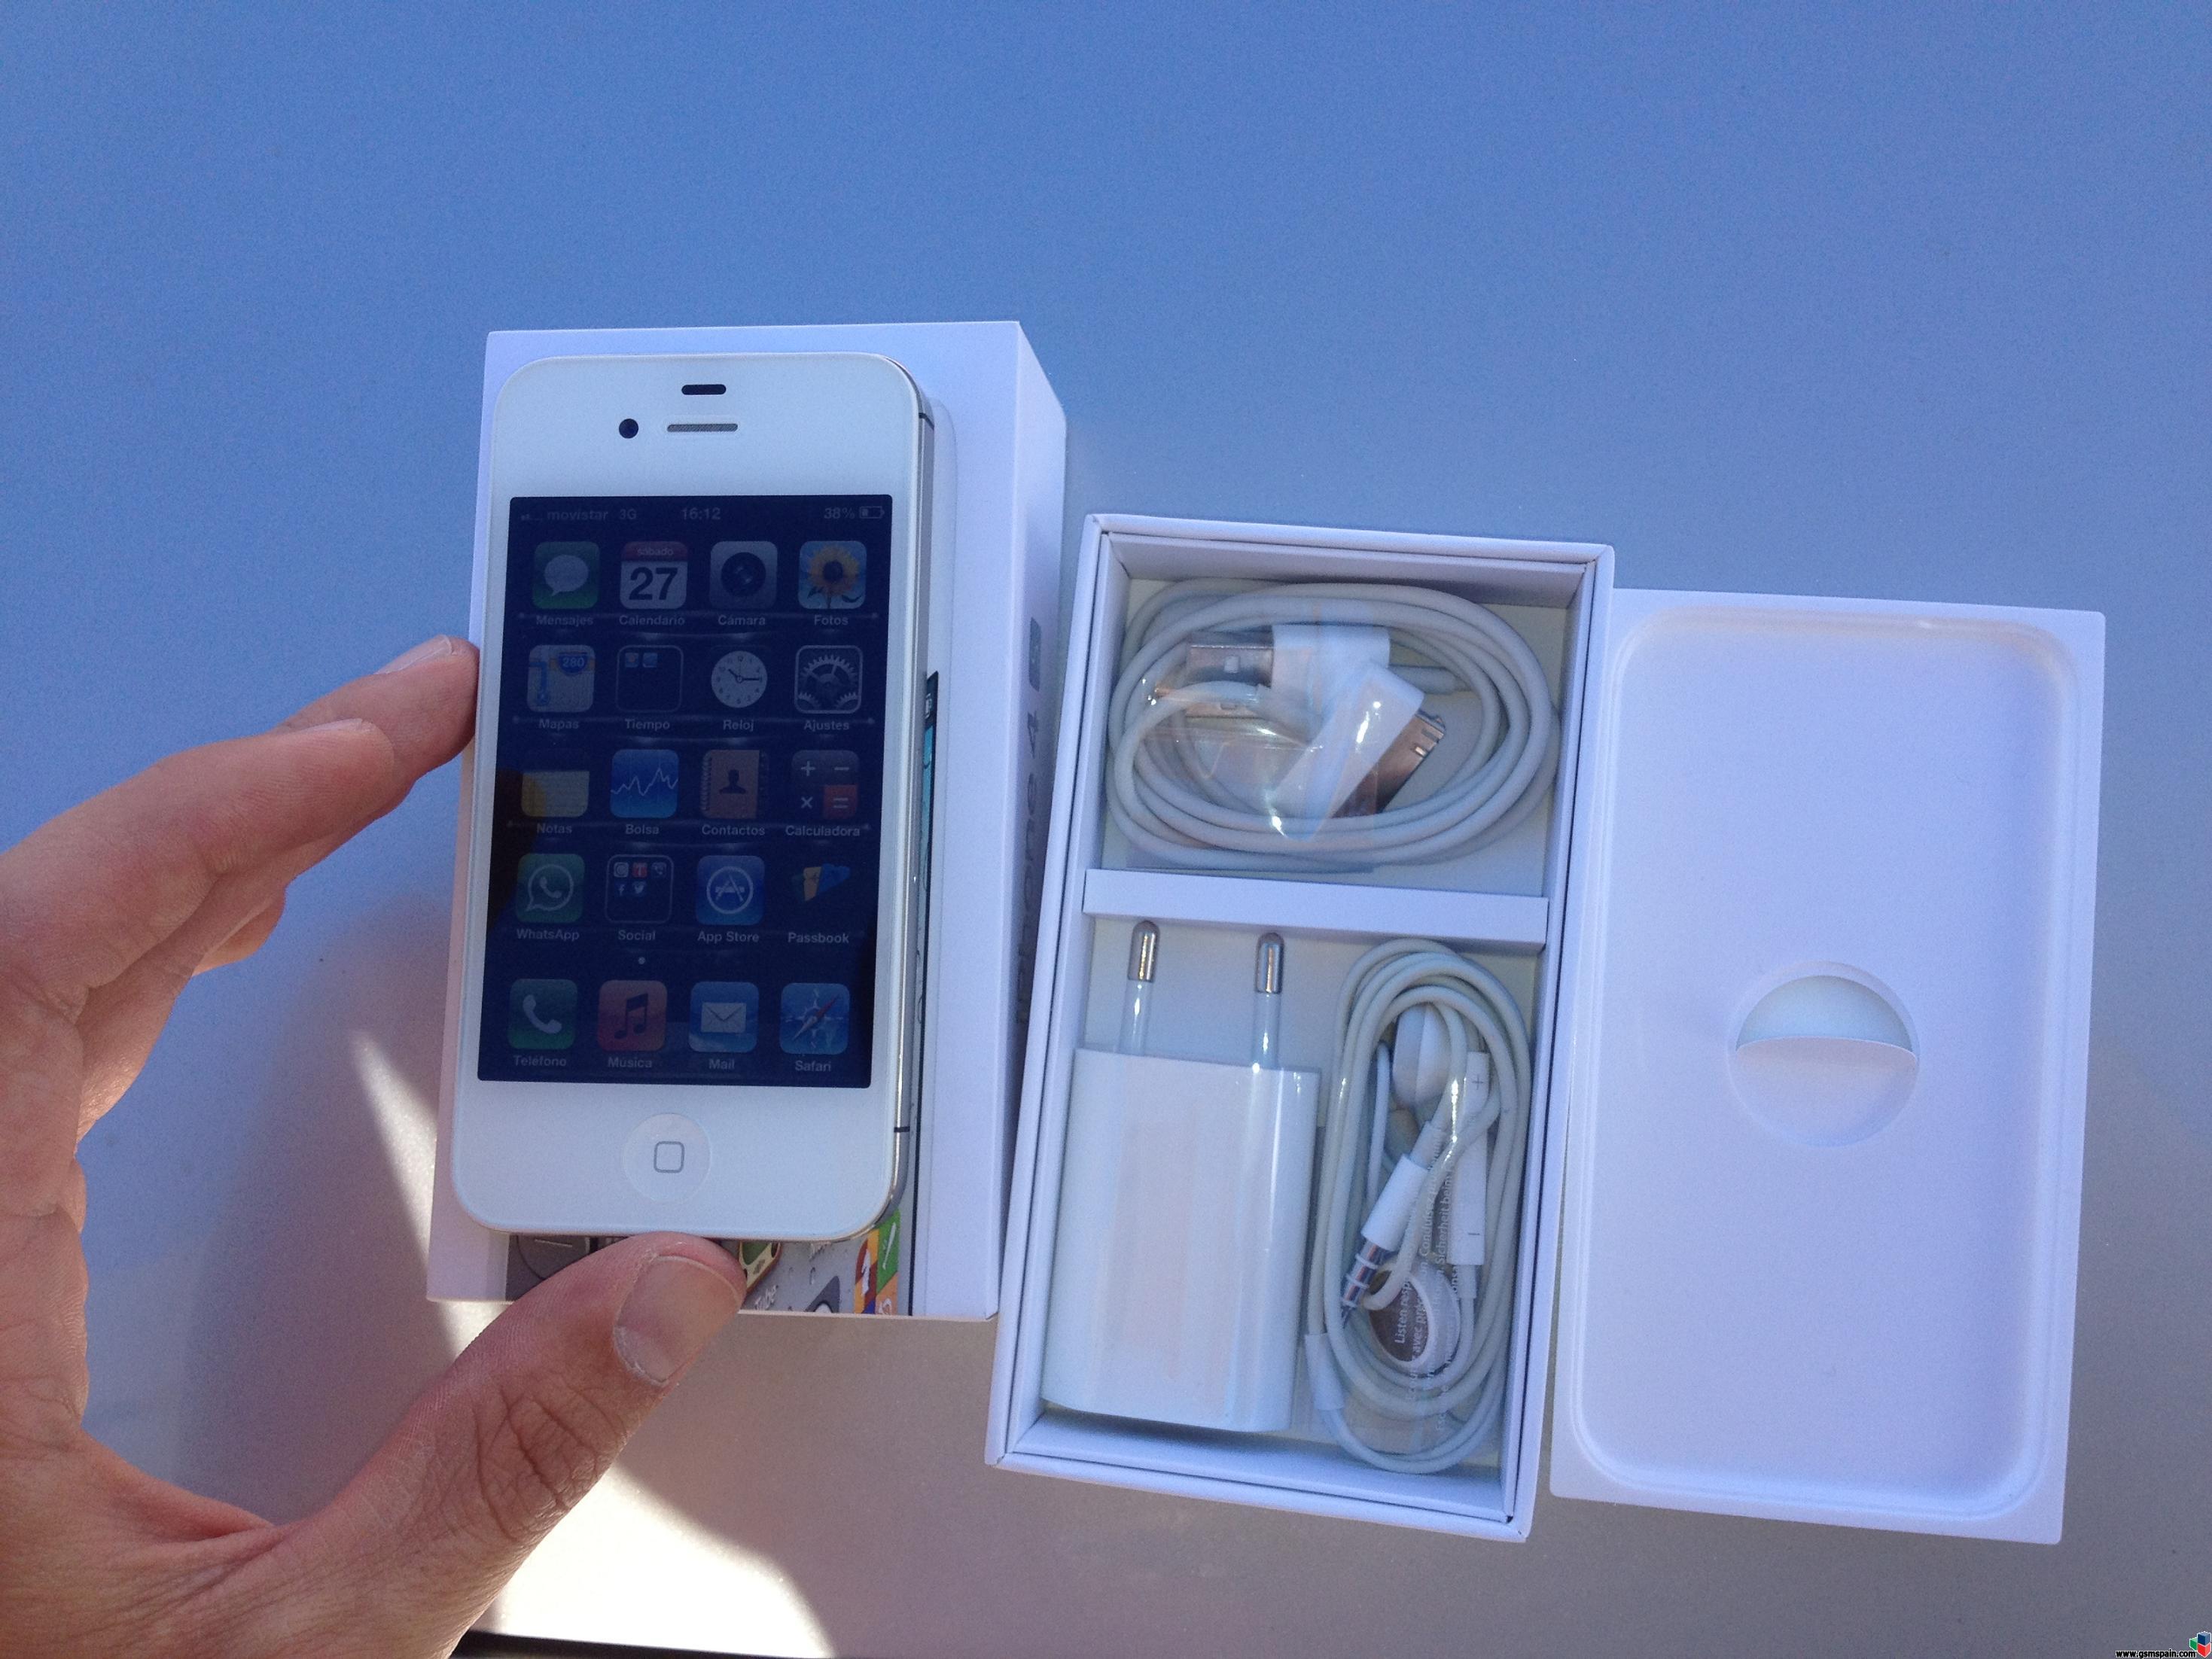 [VENDO] iPhone 4s 64gb blanco libre impecable (cambio de apple) con garanta de apple